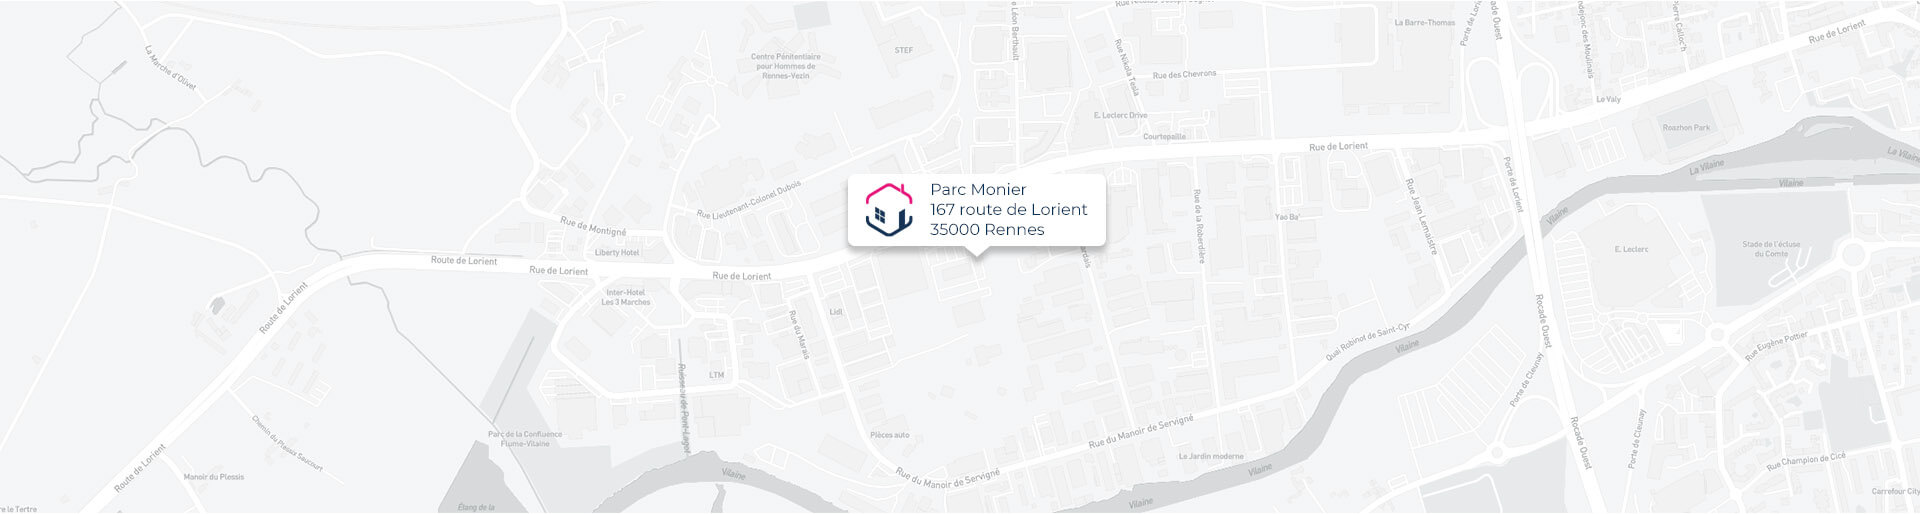 Plan de l'agence de Rennes IMMO9 située Parc Monier 167, route de Lorient 35000 Rennes tel: 0230964860